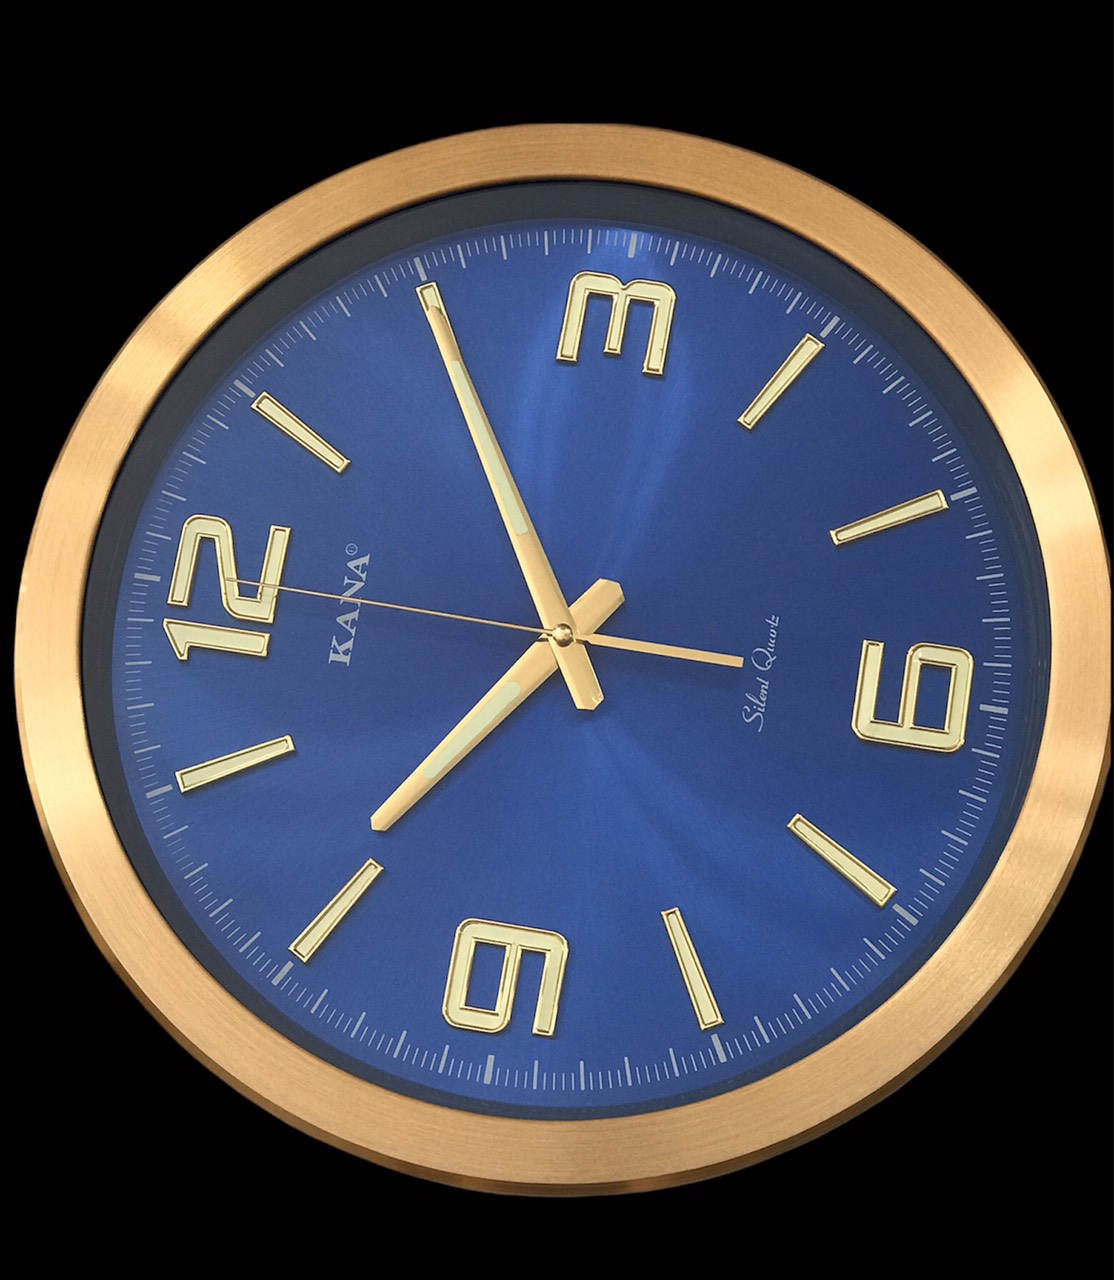 Đồng hồ treo tường KN-S45x (xanh dạ quang)